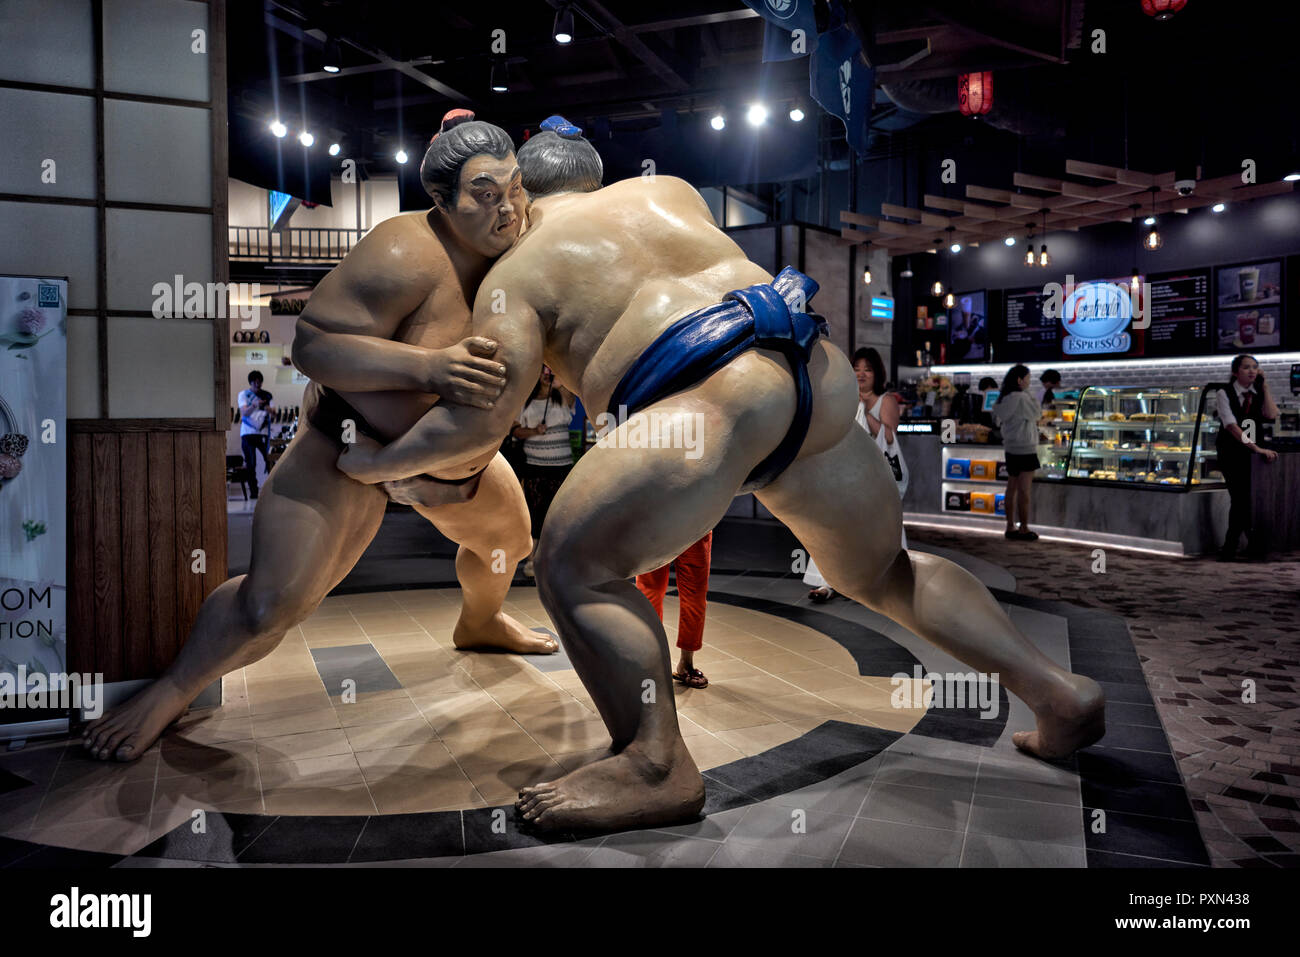 Lottatori di Sumo. Statua di lottatori di sumo protagonista presso un ristorante giapponese nel terminale 21 a tema di Tokyo shopping mall, Pattaya Thailandia del sud-est asiatico Foto Stock